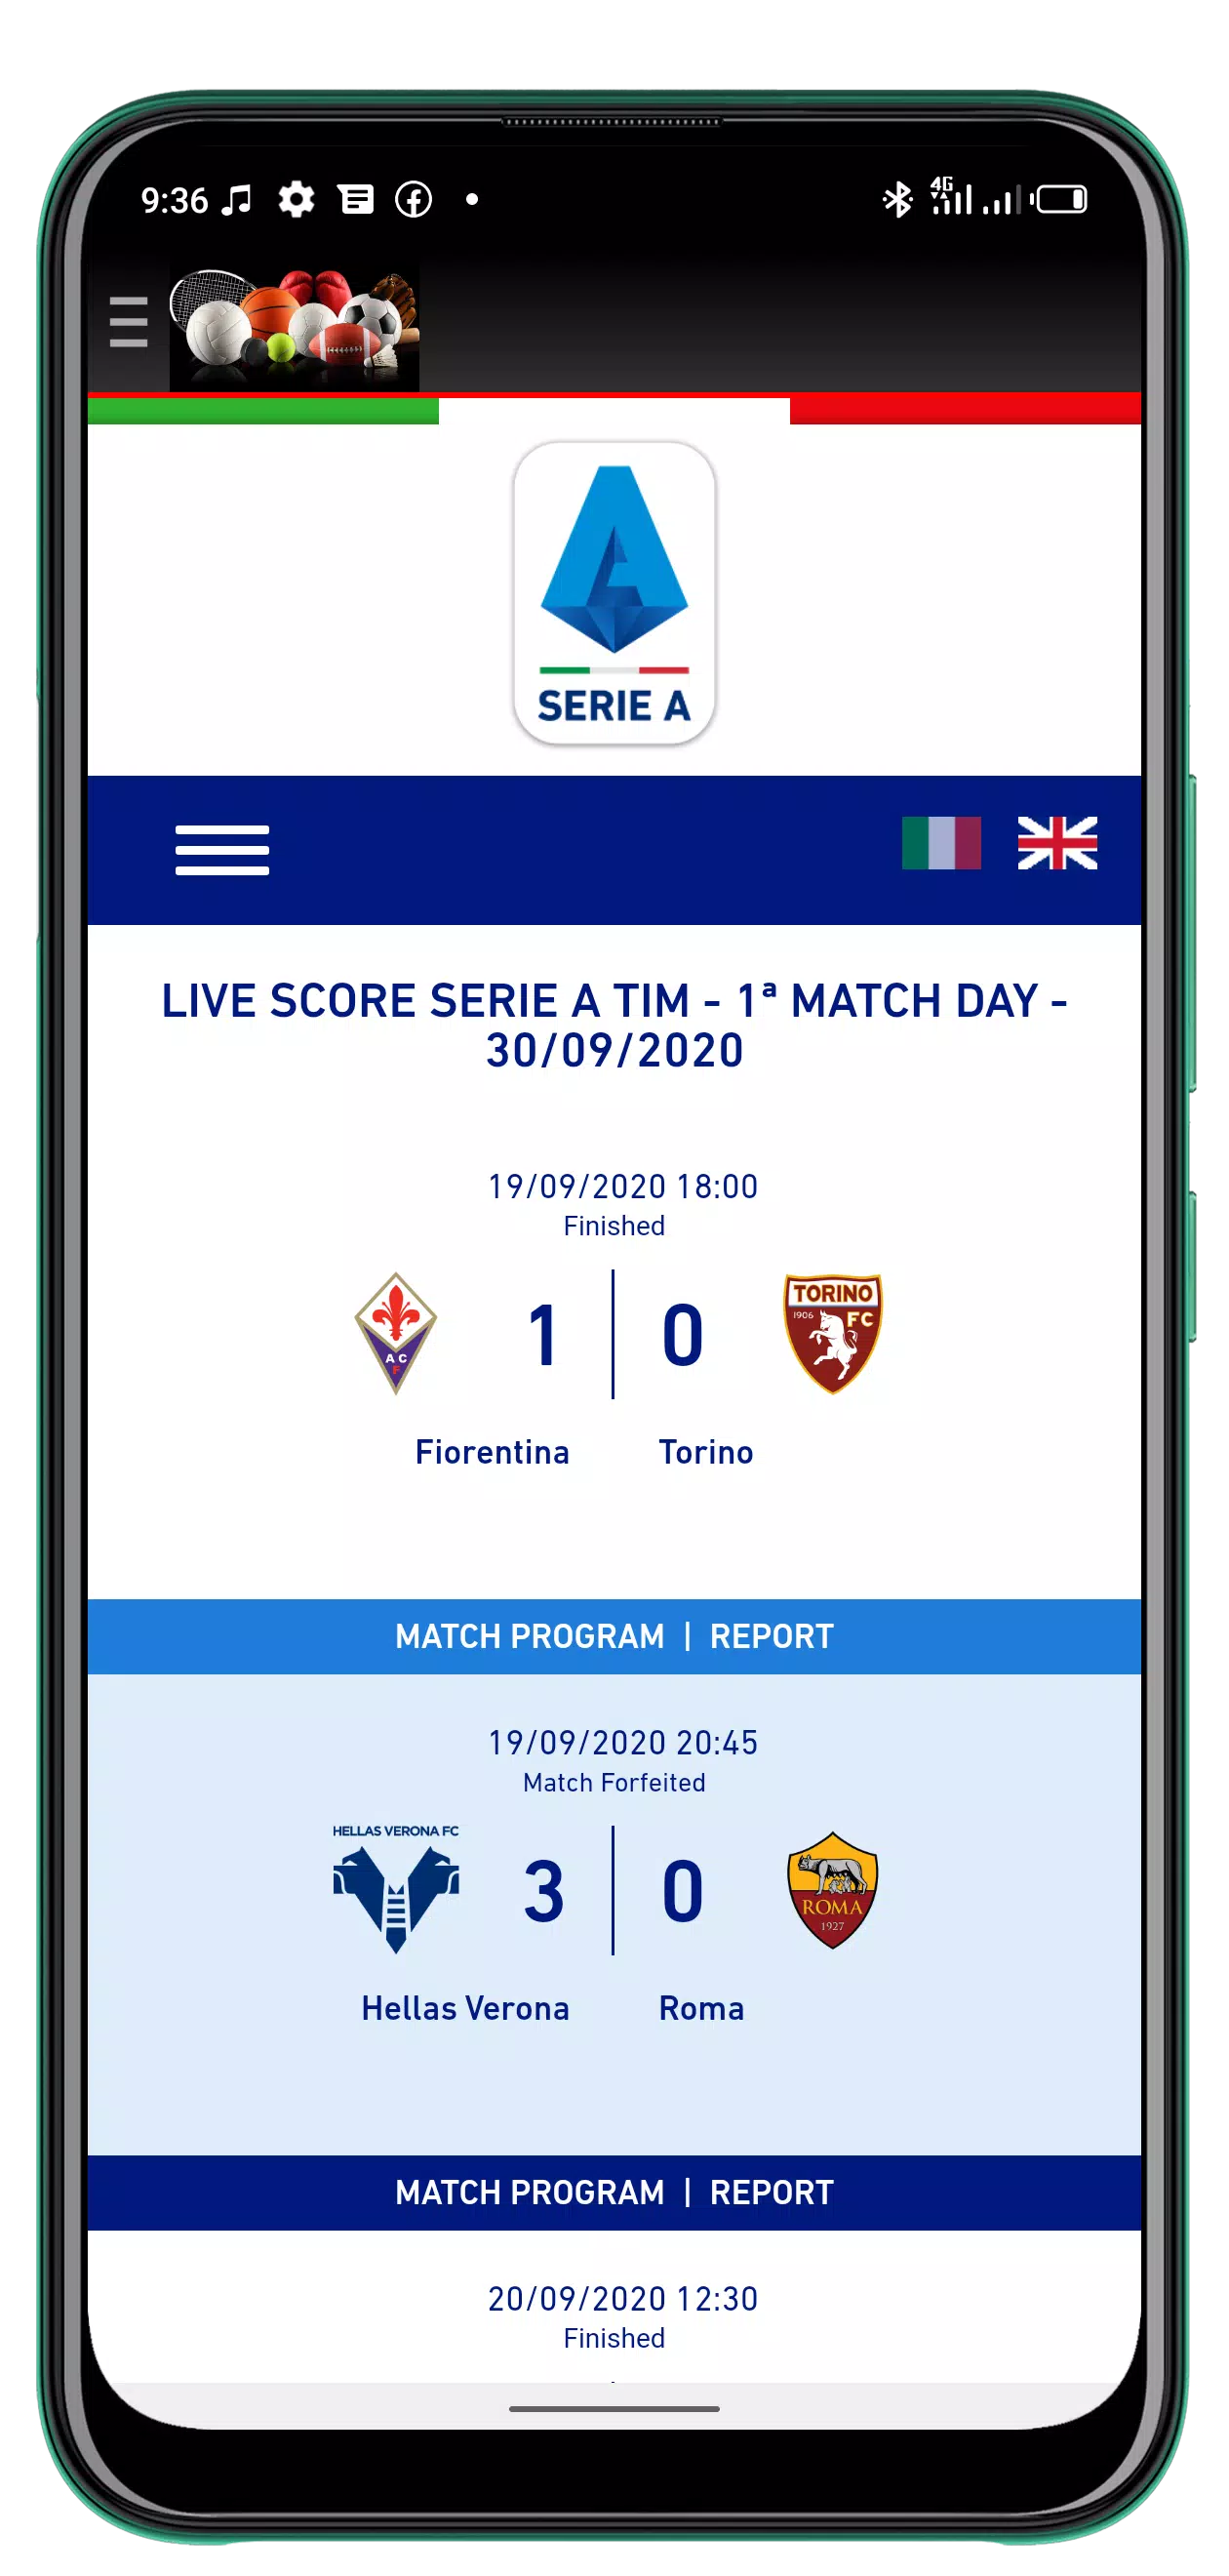 Fiorentina vs Torino FC Preview 19/09/2020